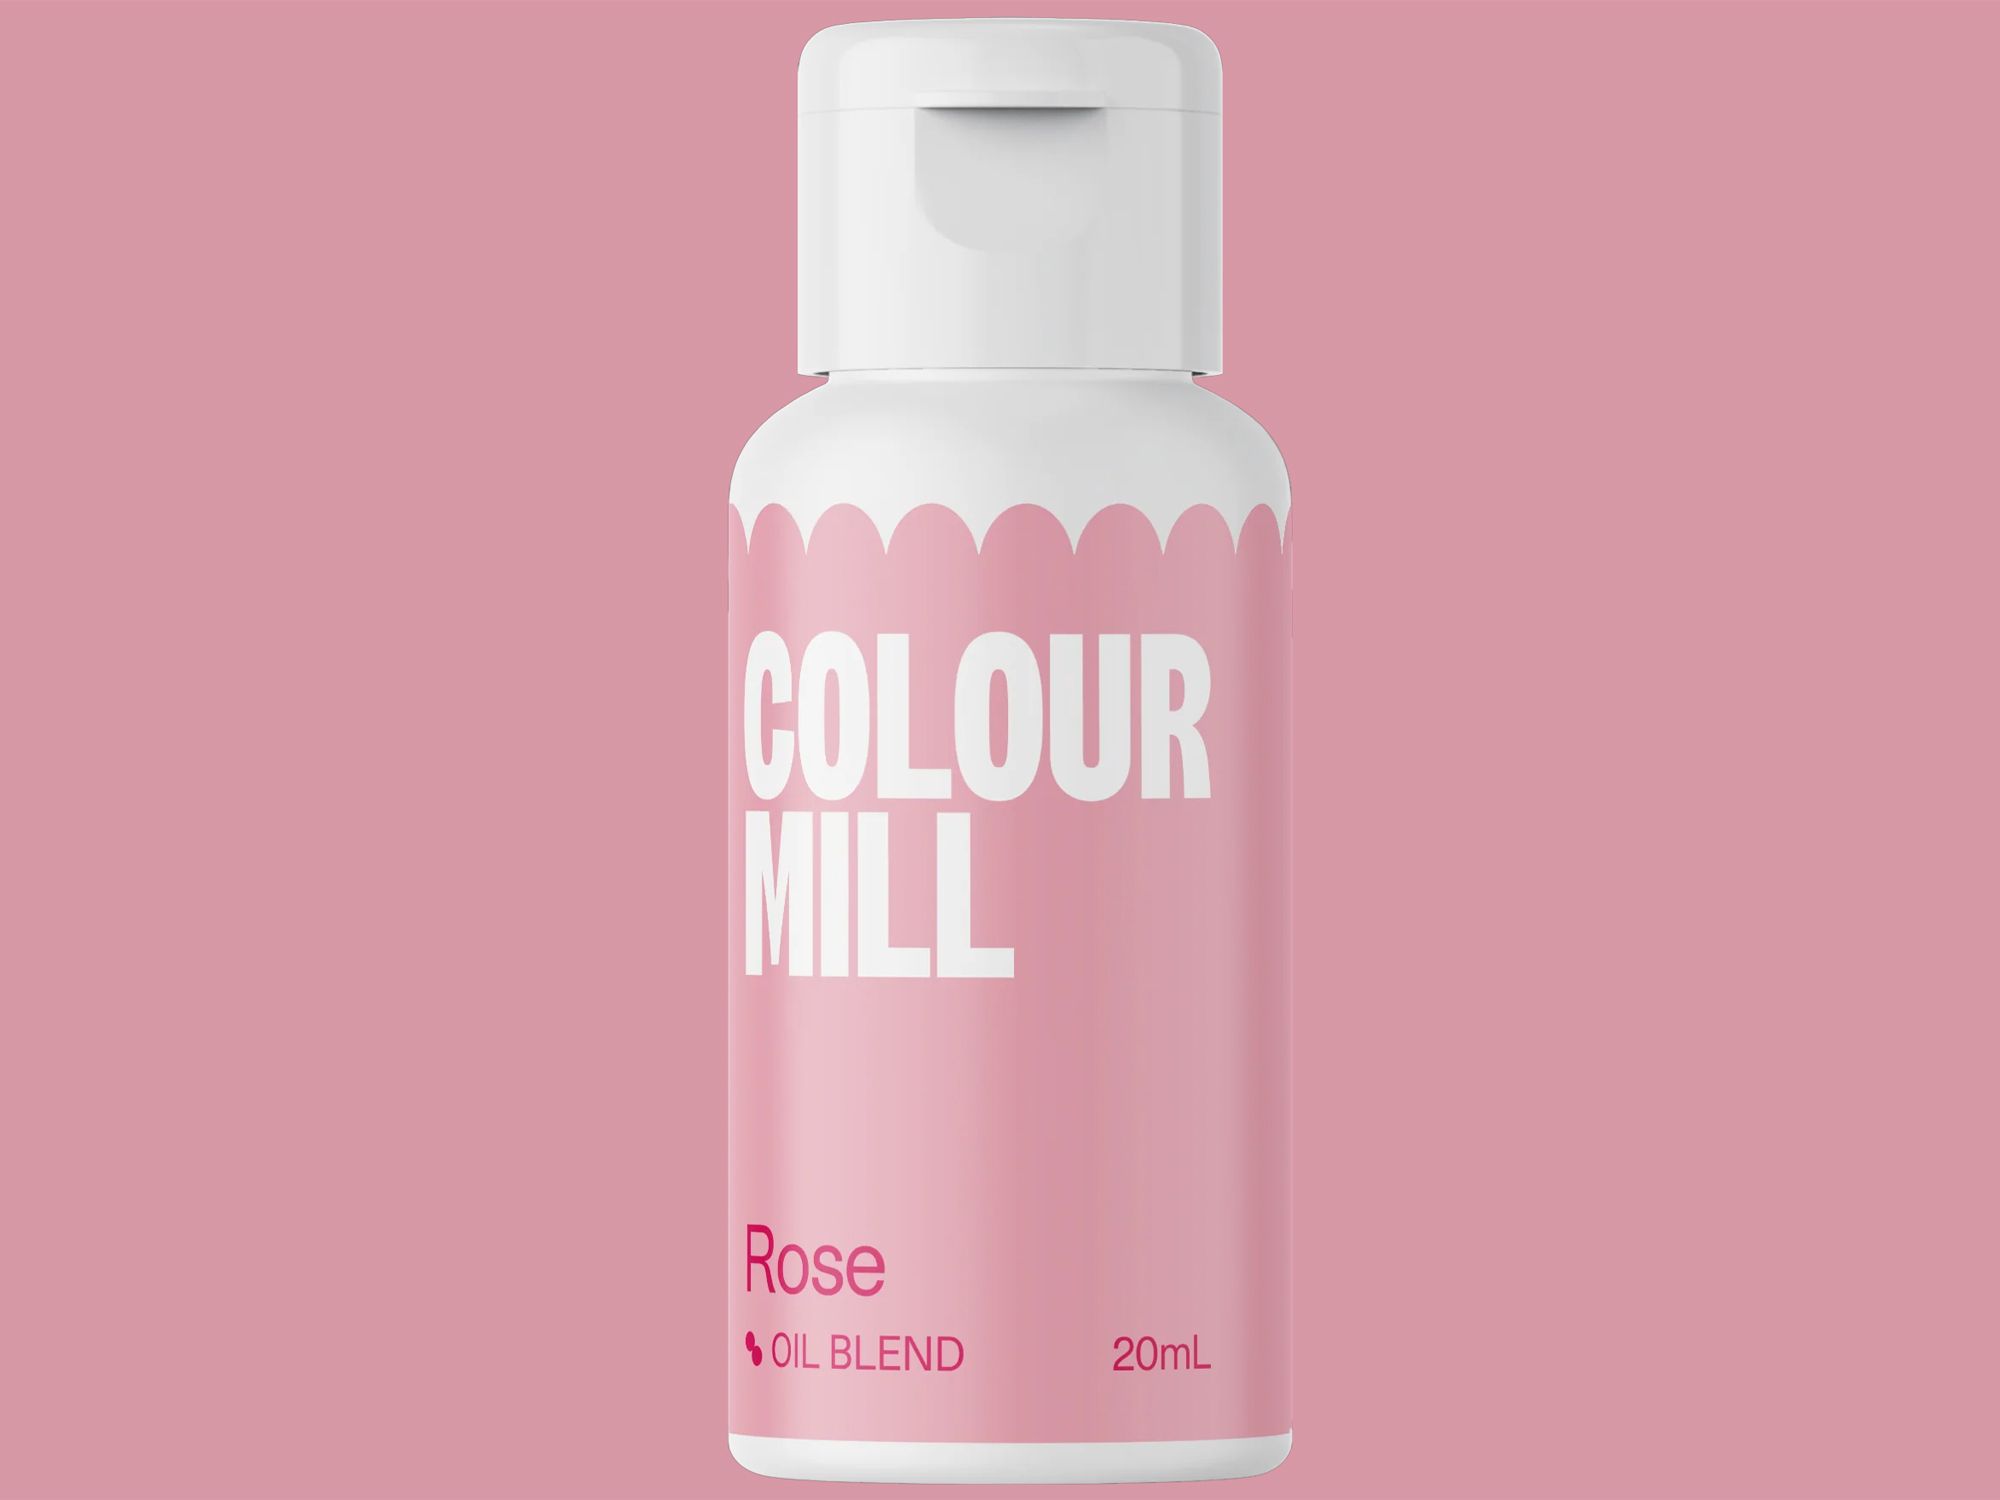 Colour Mill Rose (Oil Blend) 20ml